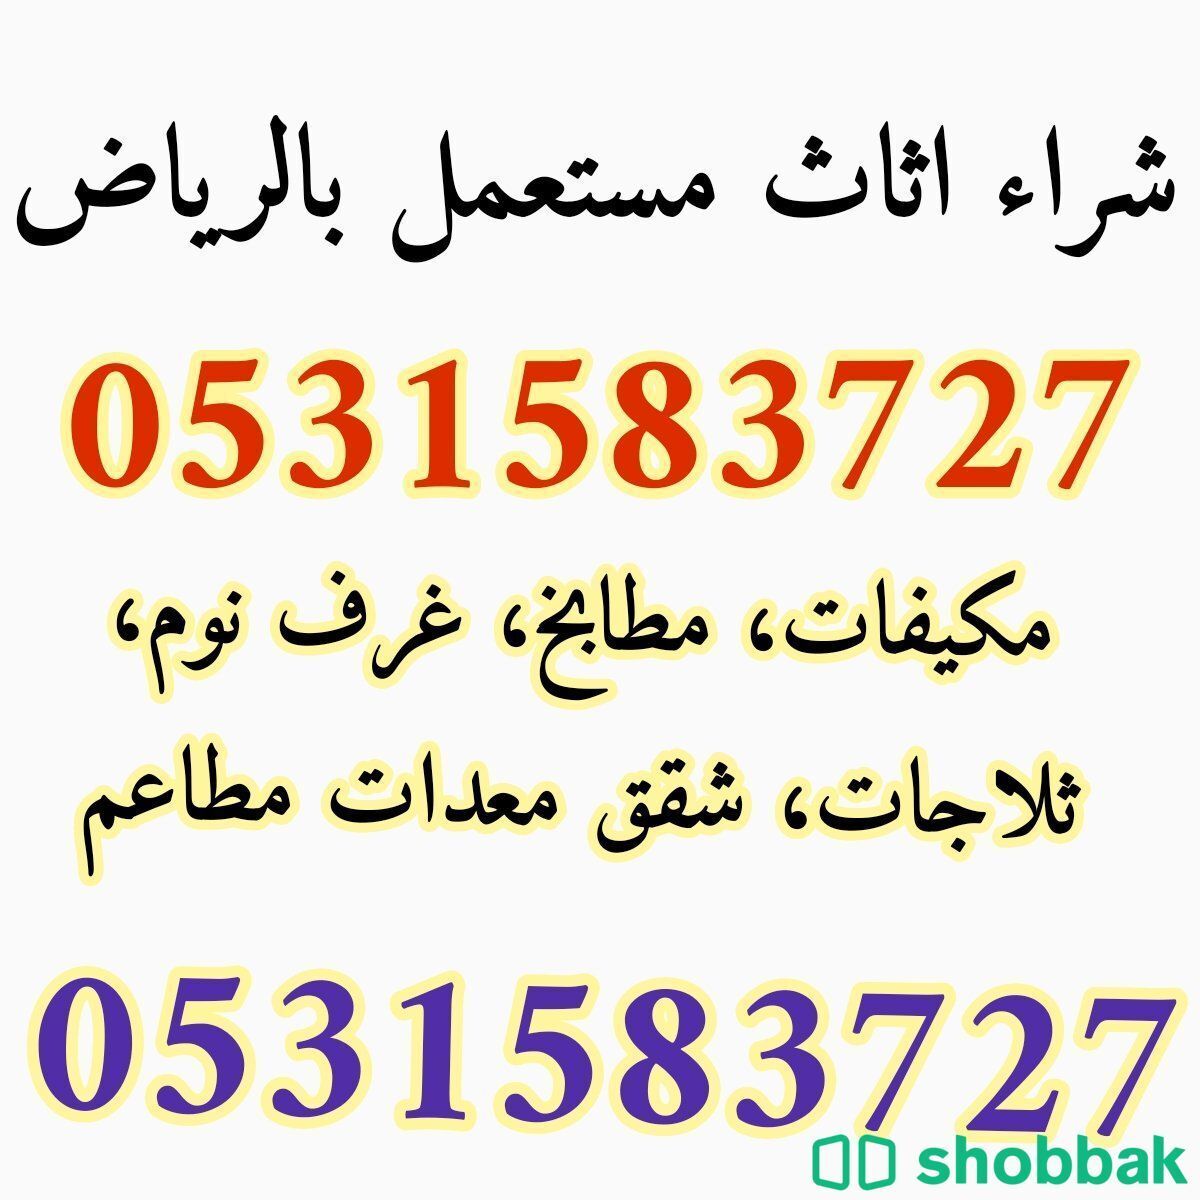 شراء اثاث مستعمل حي اليرموك 0531583727  Shobbak Saudi Arabia